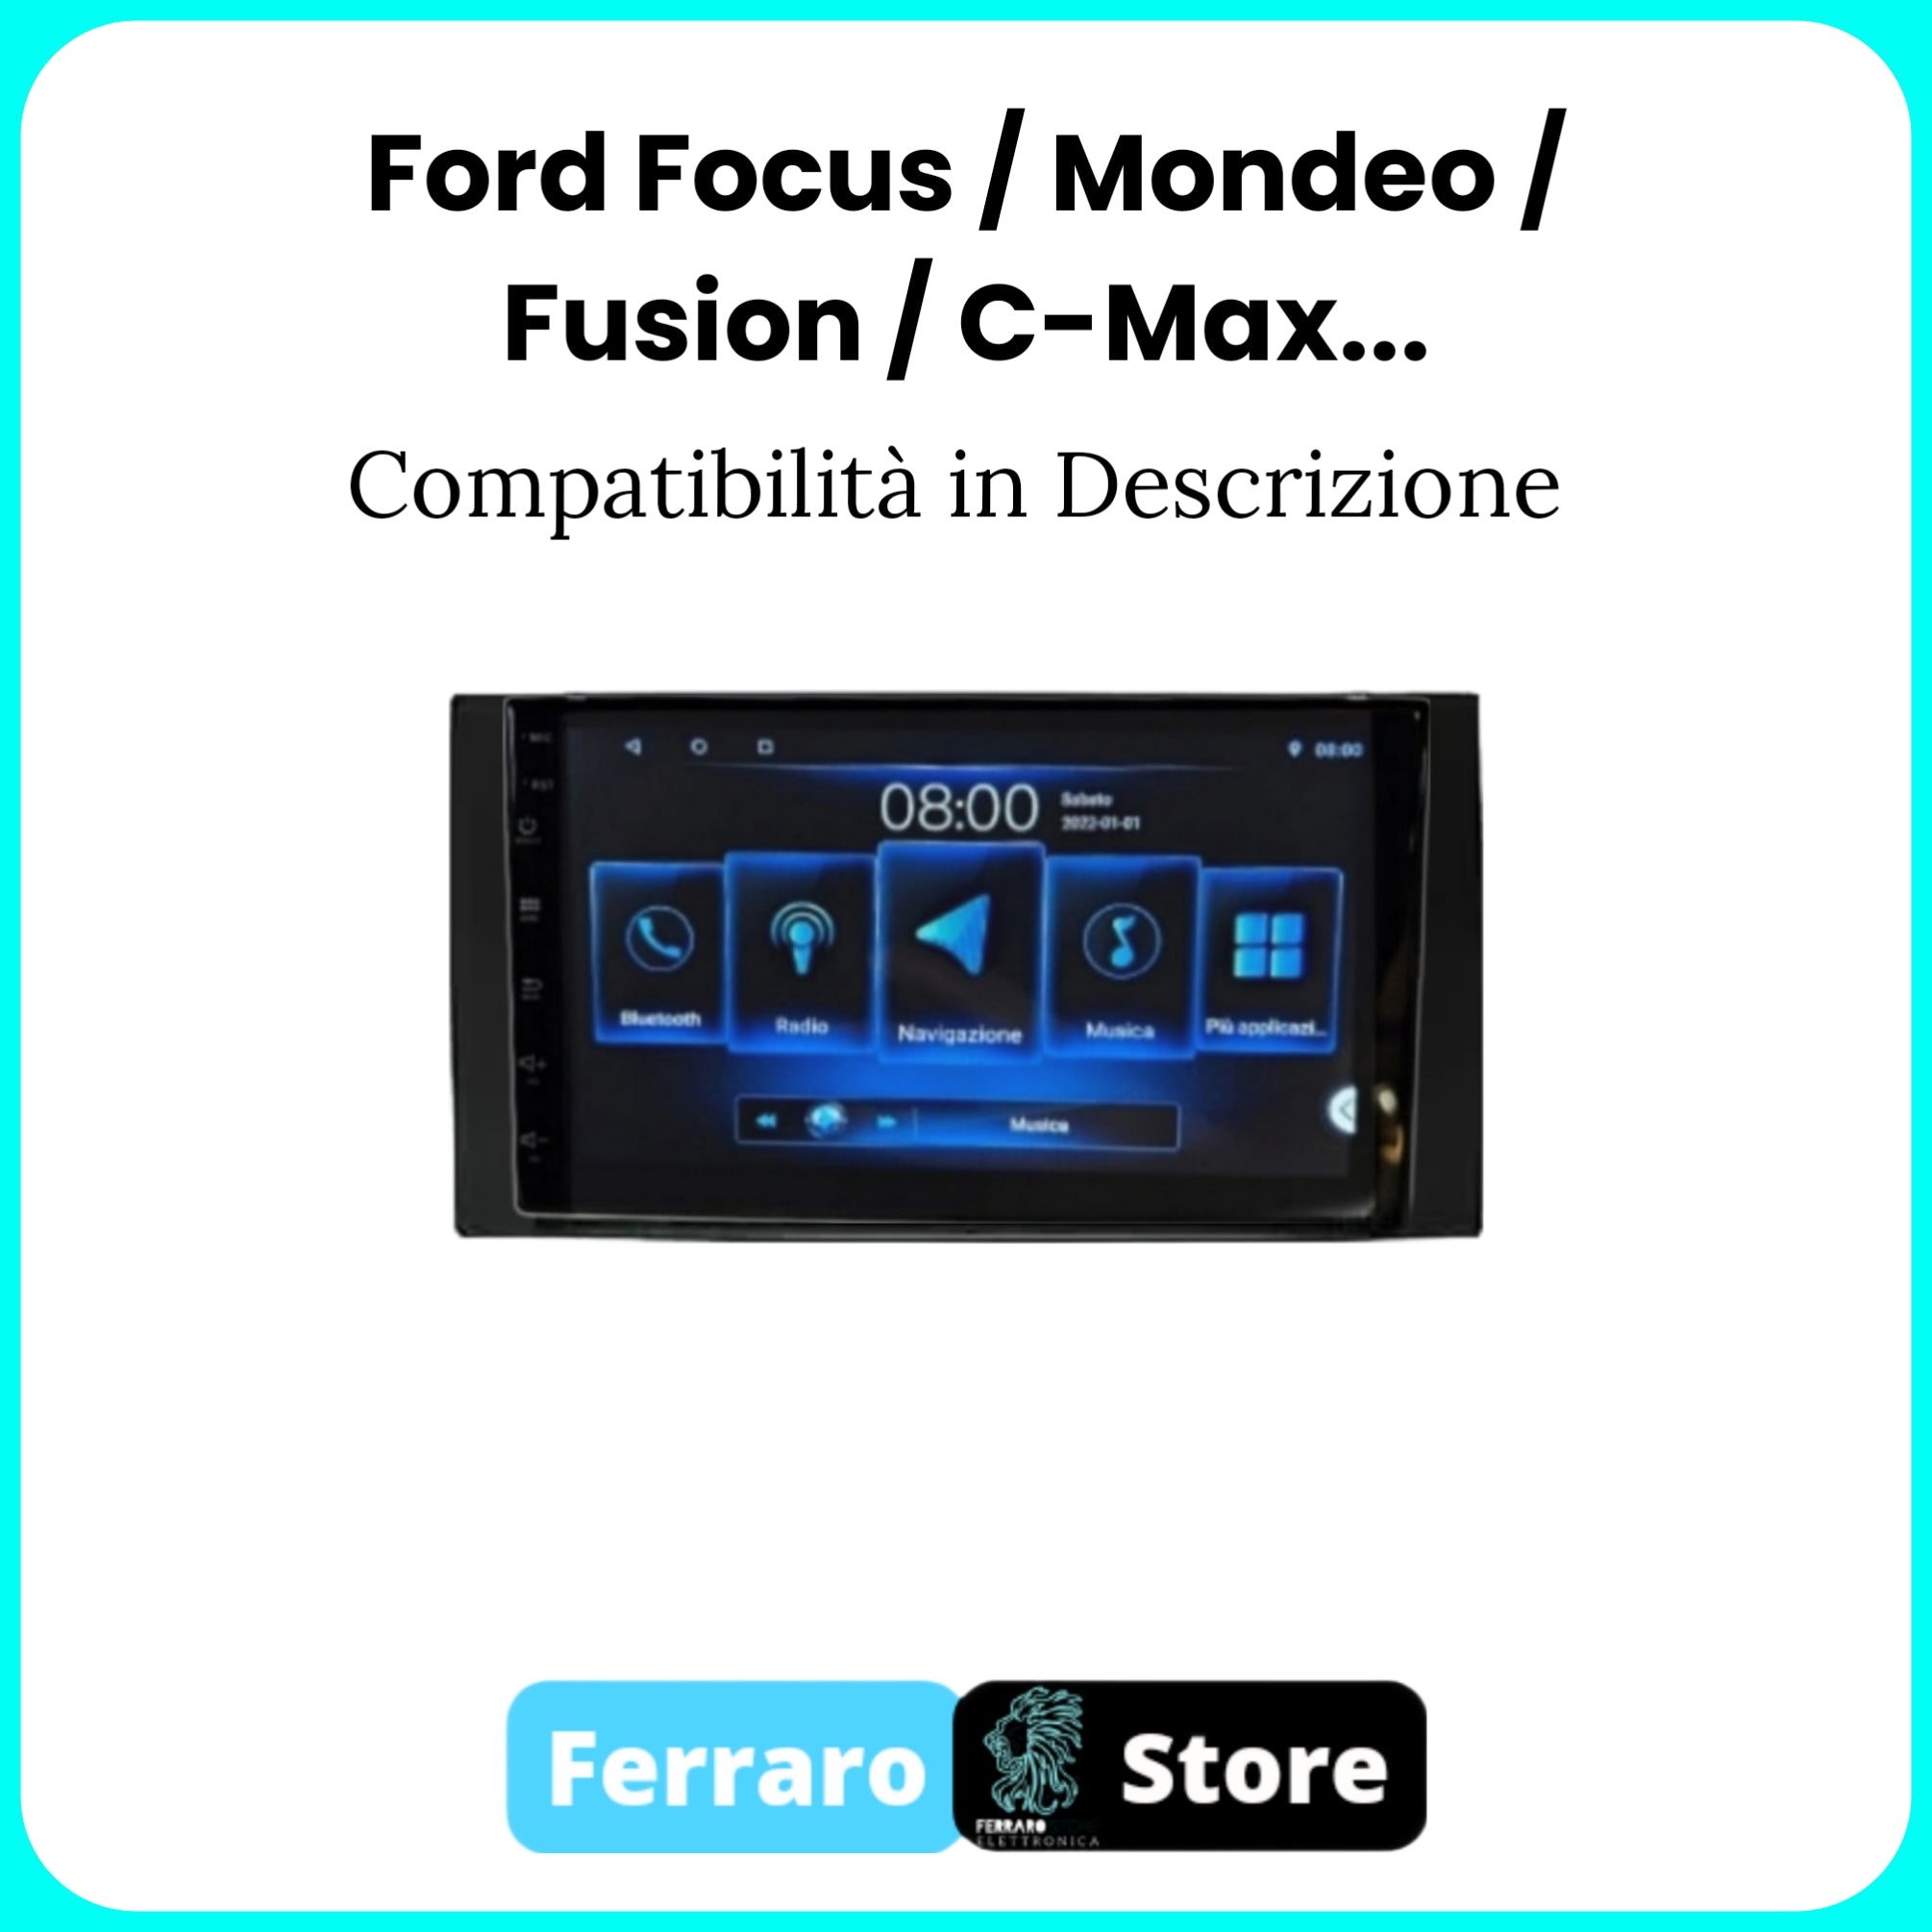 Autoradio per FORD FOCUS / MONDEO / FIESTA / C-MAX / KUGA / GALAXY / FIESTA / TRANSIT CONNECT / S-MAX [2005 - 2012 COMPATIBILITA' IN DESCRIZIONE] - Sistema auto Intelligente, 2Din 7"Pollici, GPS, Navigatore, Wifi